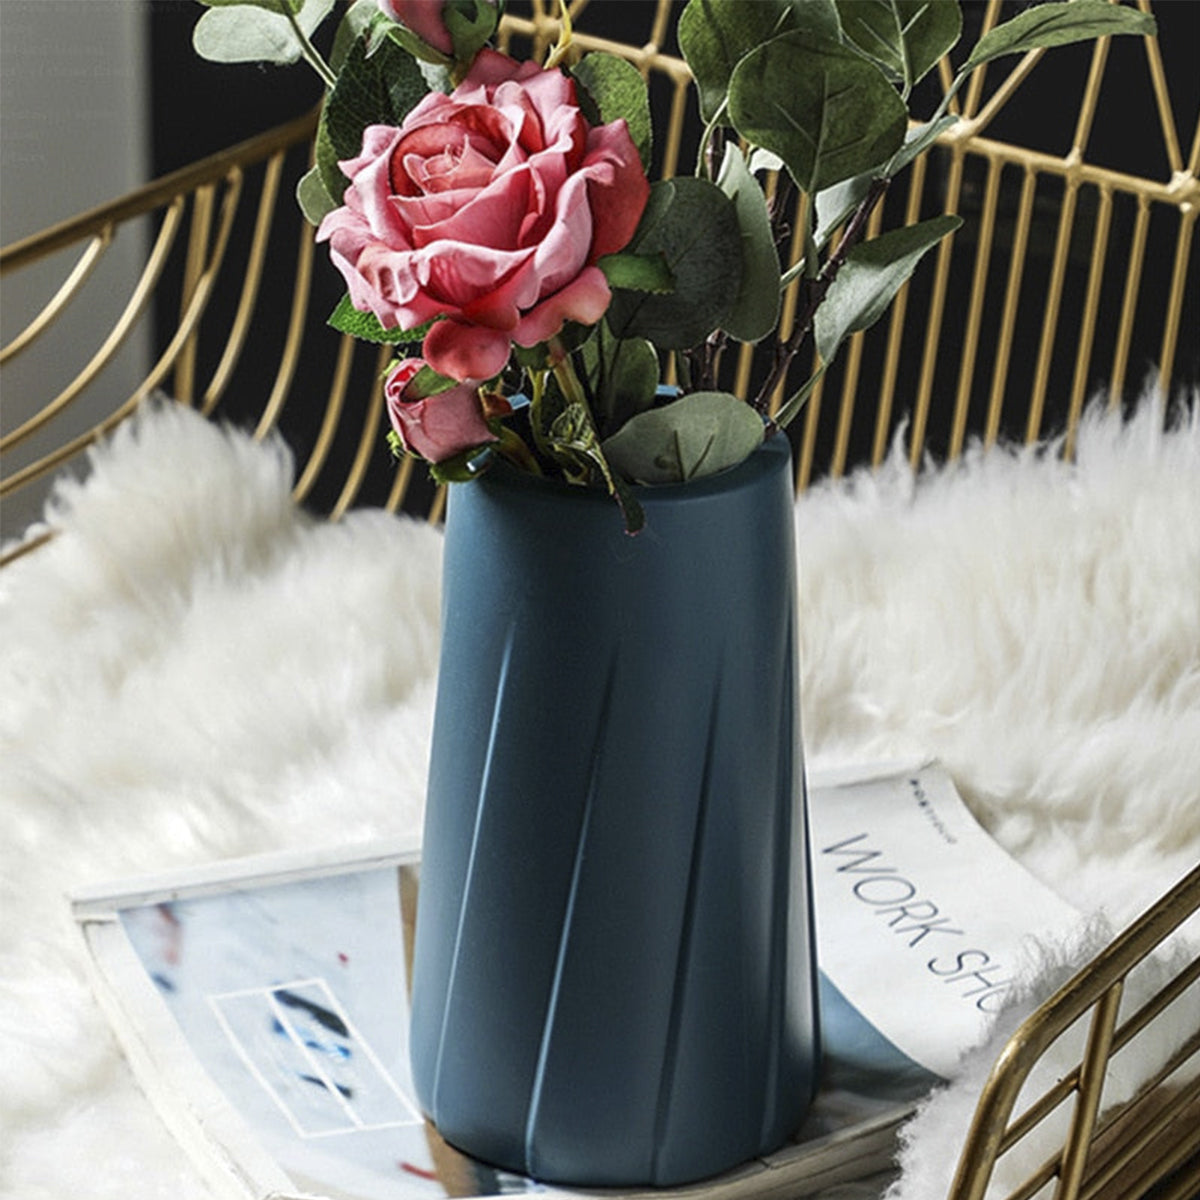 Plastic Vase For Home Decor